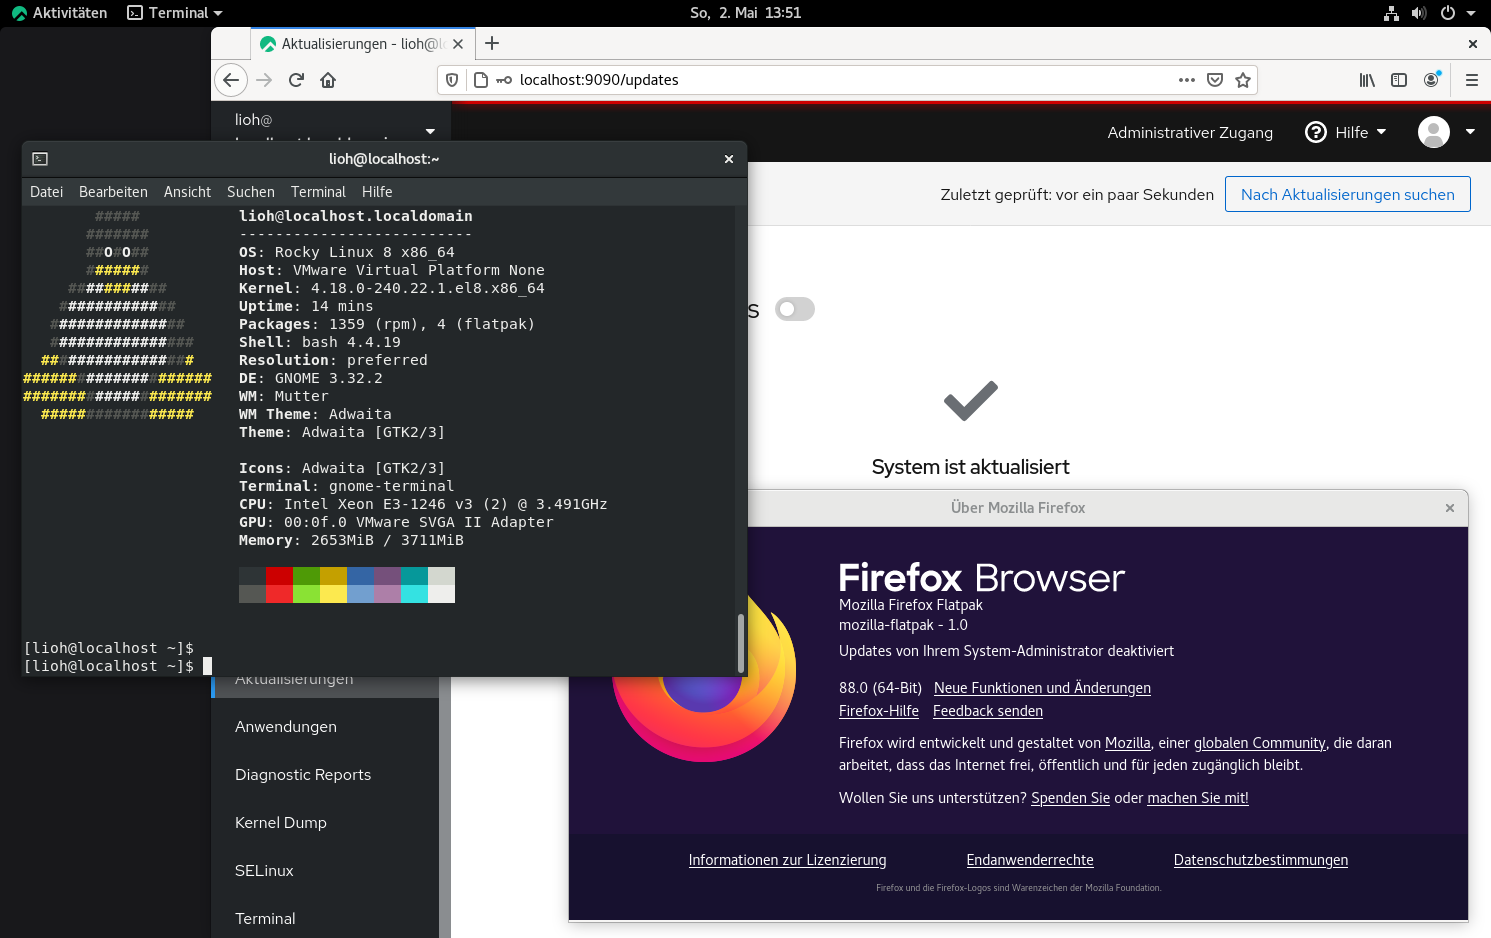 rocky linux 8.3 release candidate 1 veröffentlicht